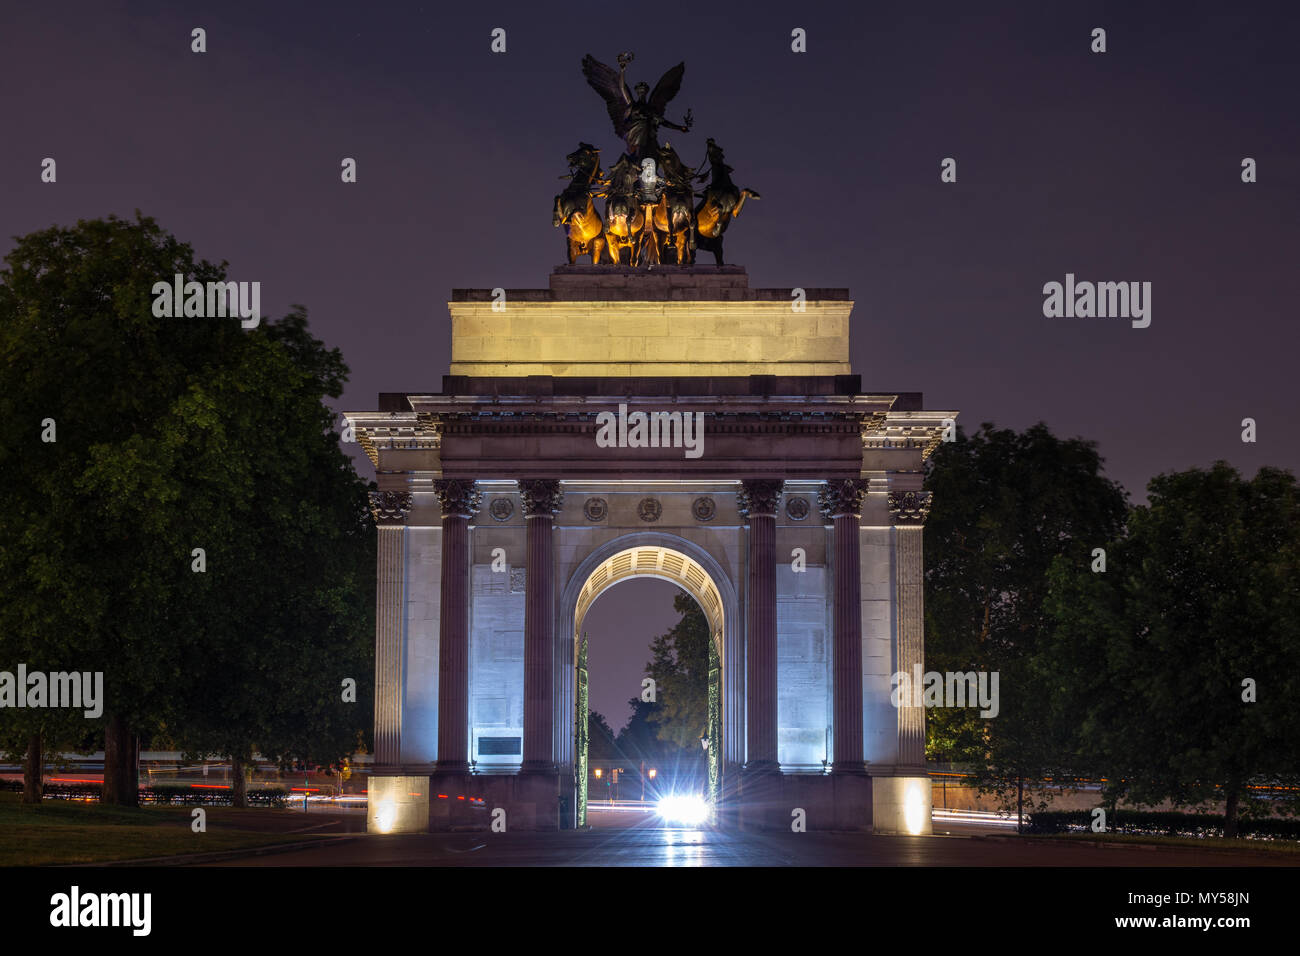 London, England, Regno Unito - 1 Giugno 2018: Il trionfale Wellington Arch a capo di Constitution Hill su Hyde Park Corner a Londra è illuminato di notte. Foto Stock